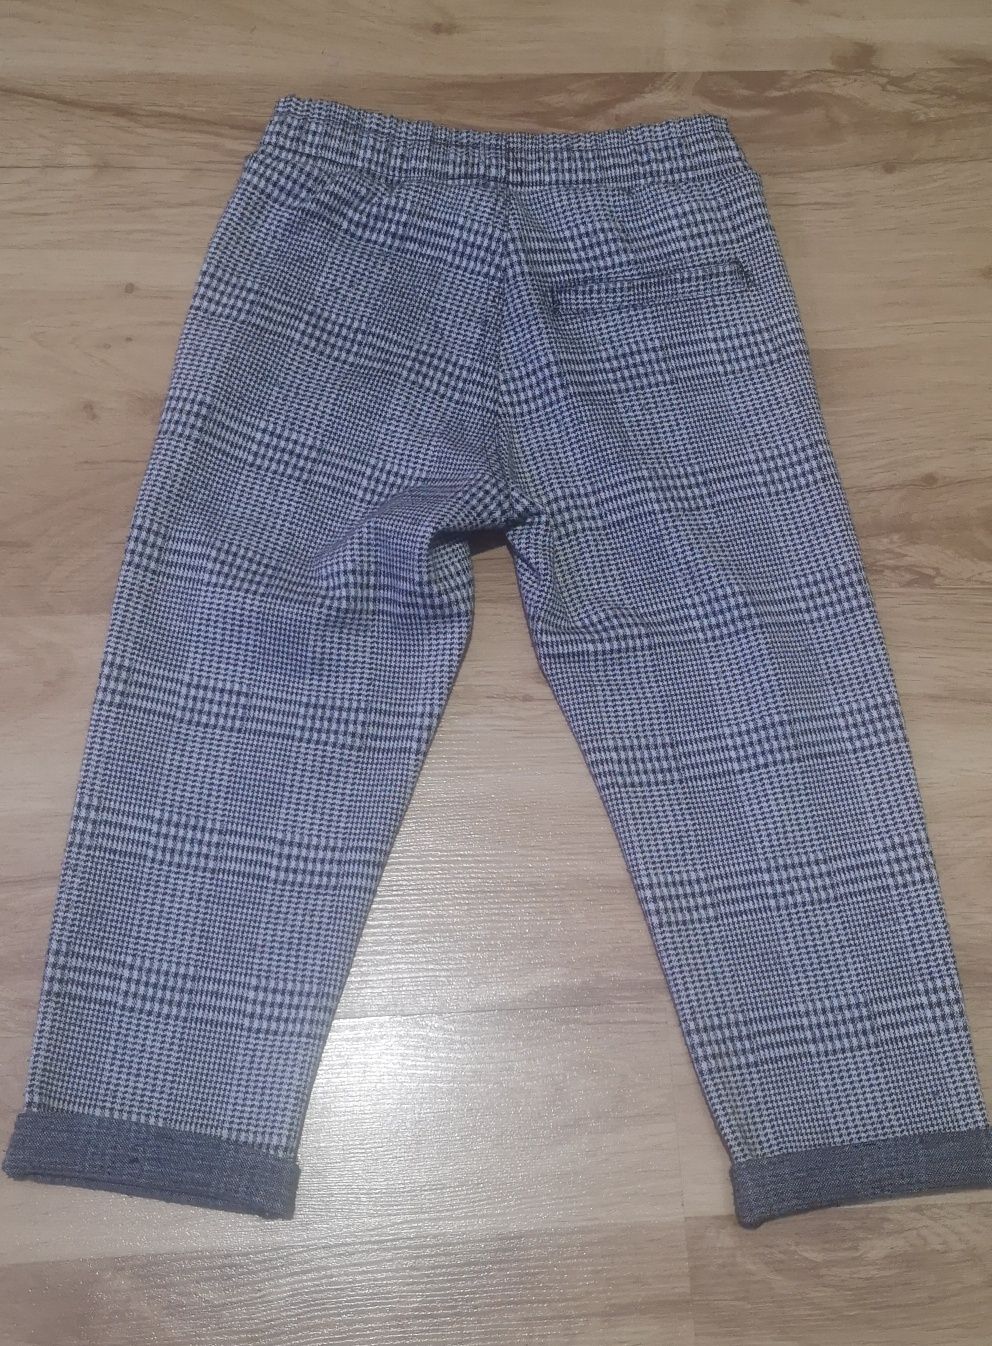 Spodnie materiałowe dla chłopca w kratkę Kappahl roz. 98